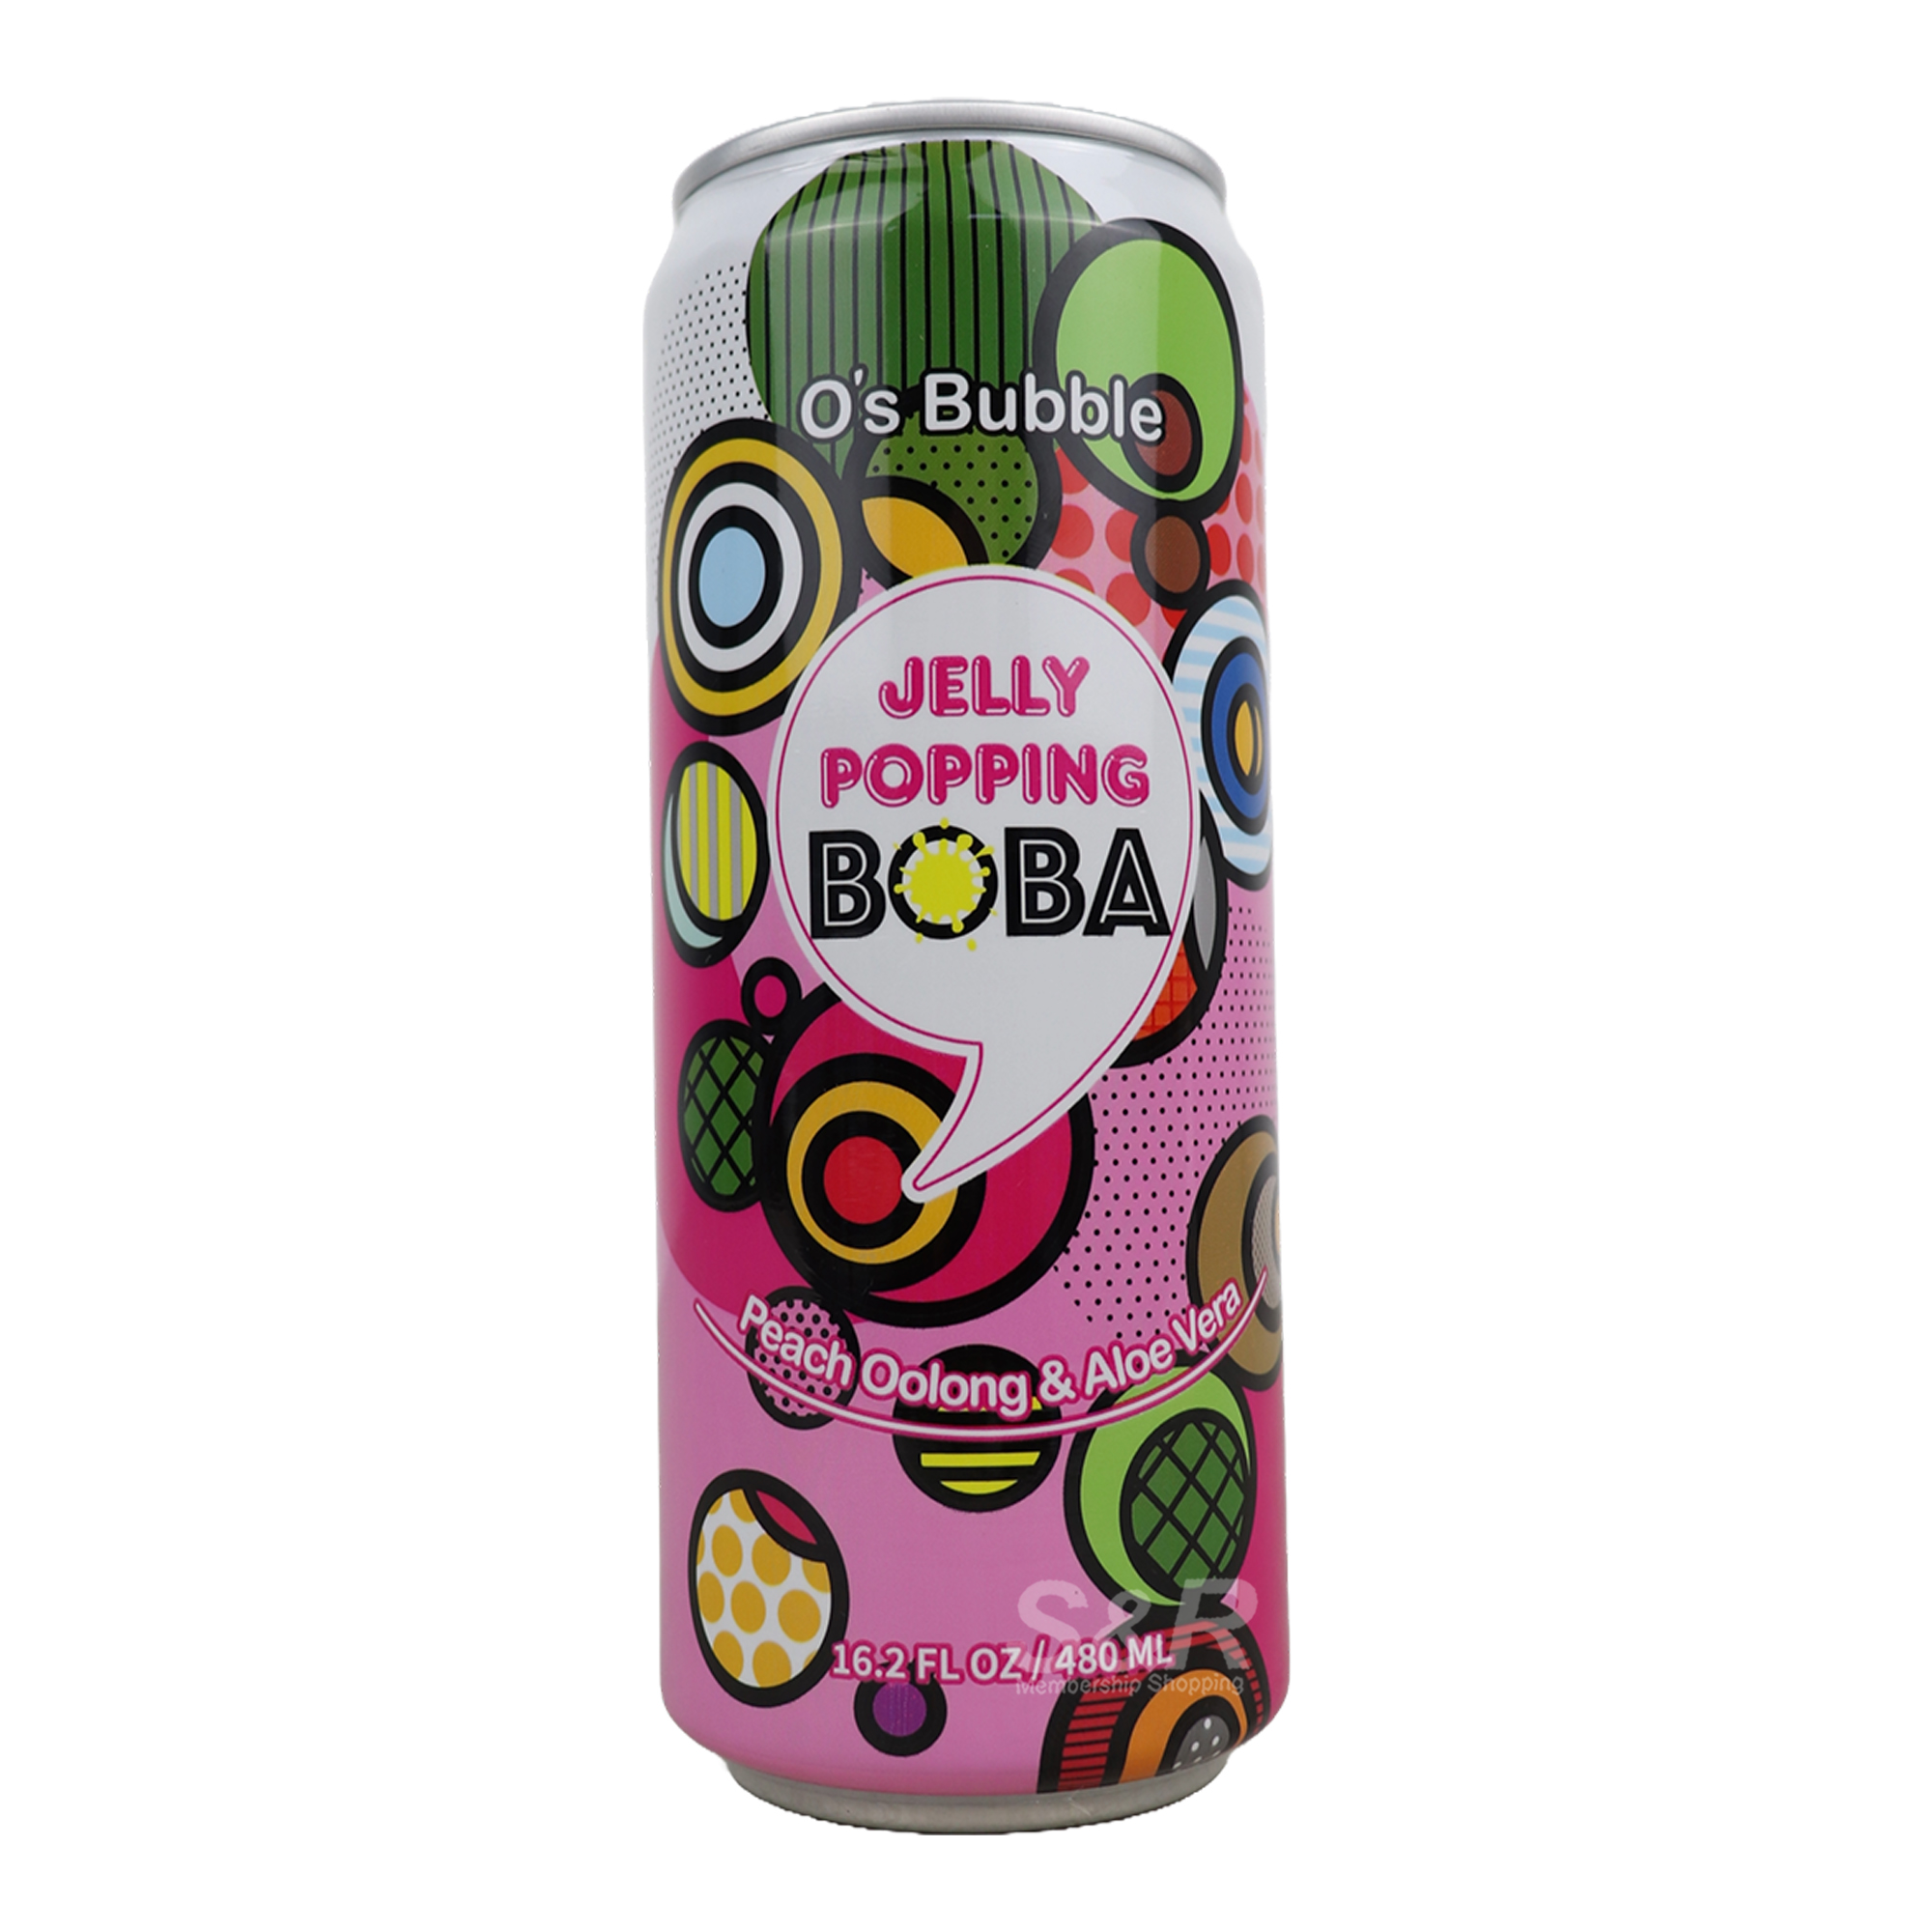 O's Bubble Jelly Popping Peach Oolong & Aloe Vera Tea 480mL